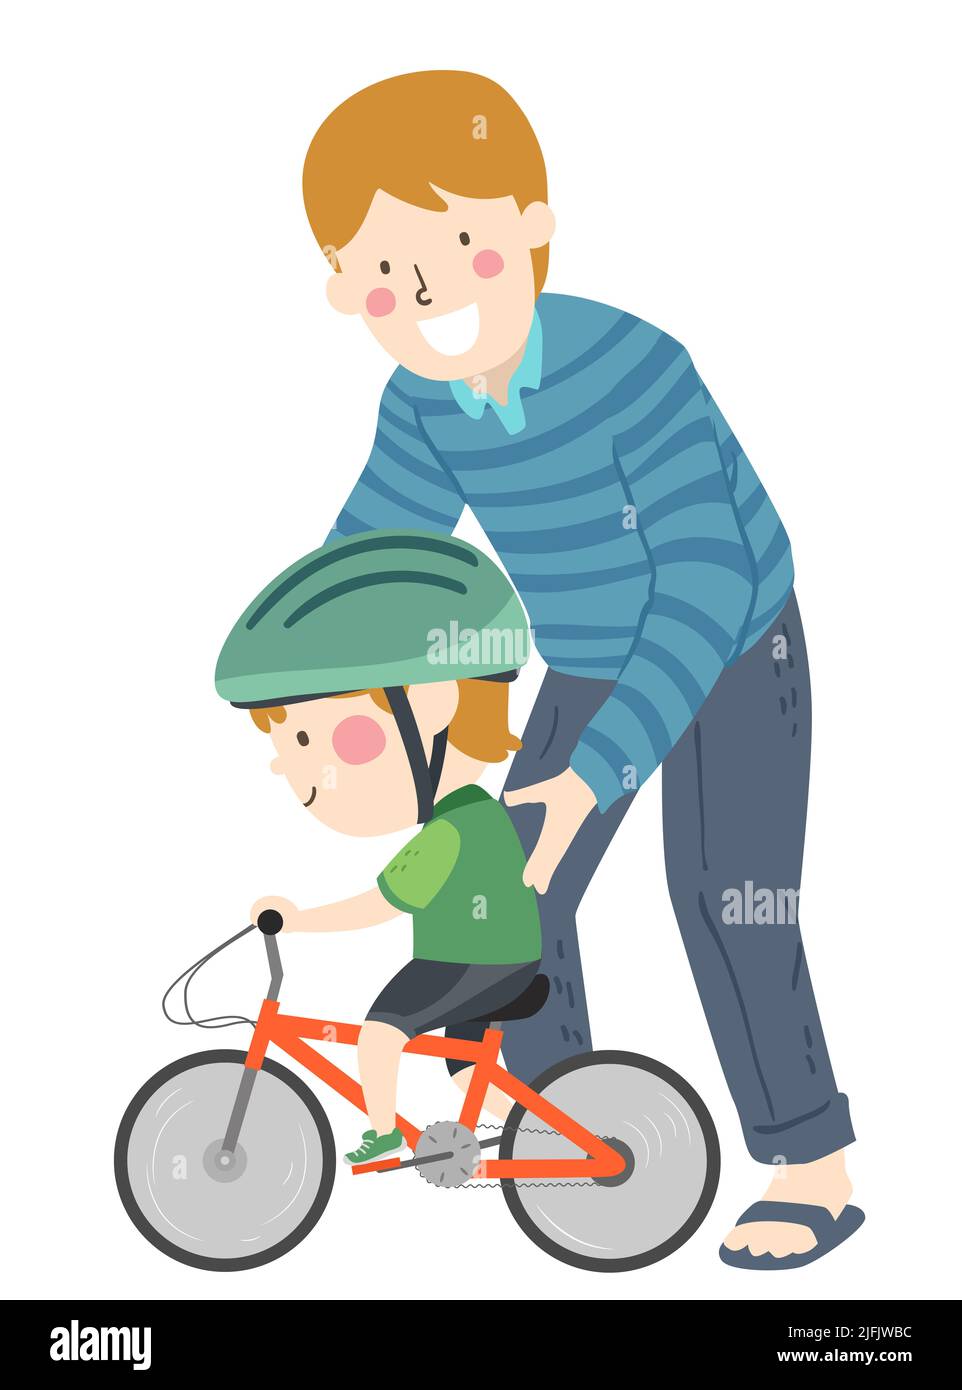 Ilustración de Kid Boy usando casco, aprendiendo a montar en bicicleta con su padre apoyándolo Foto de stock